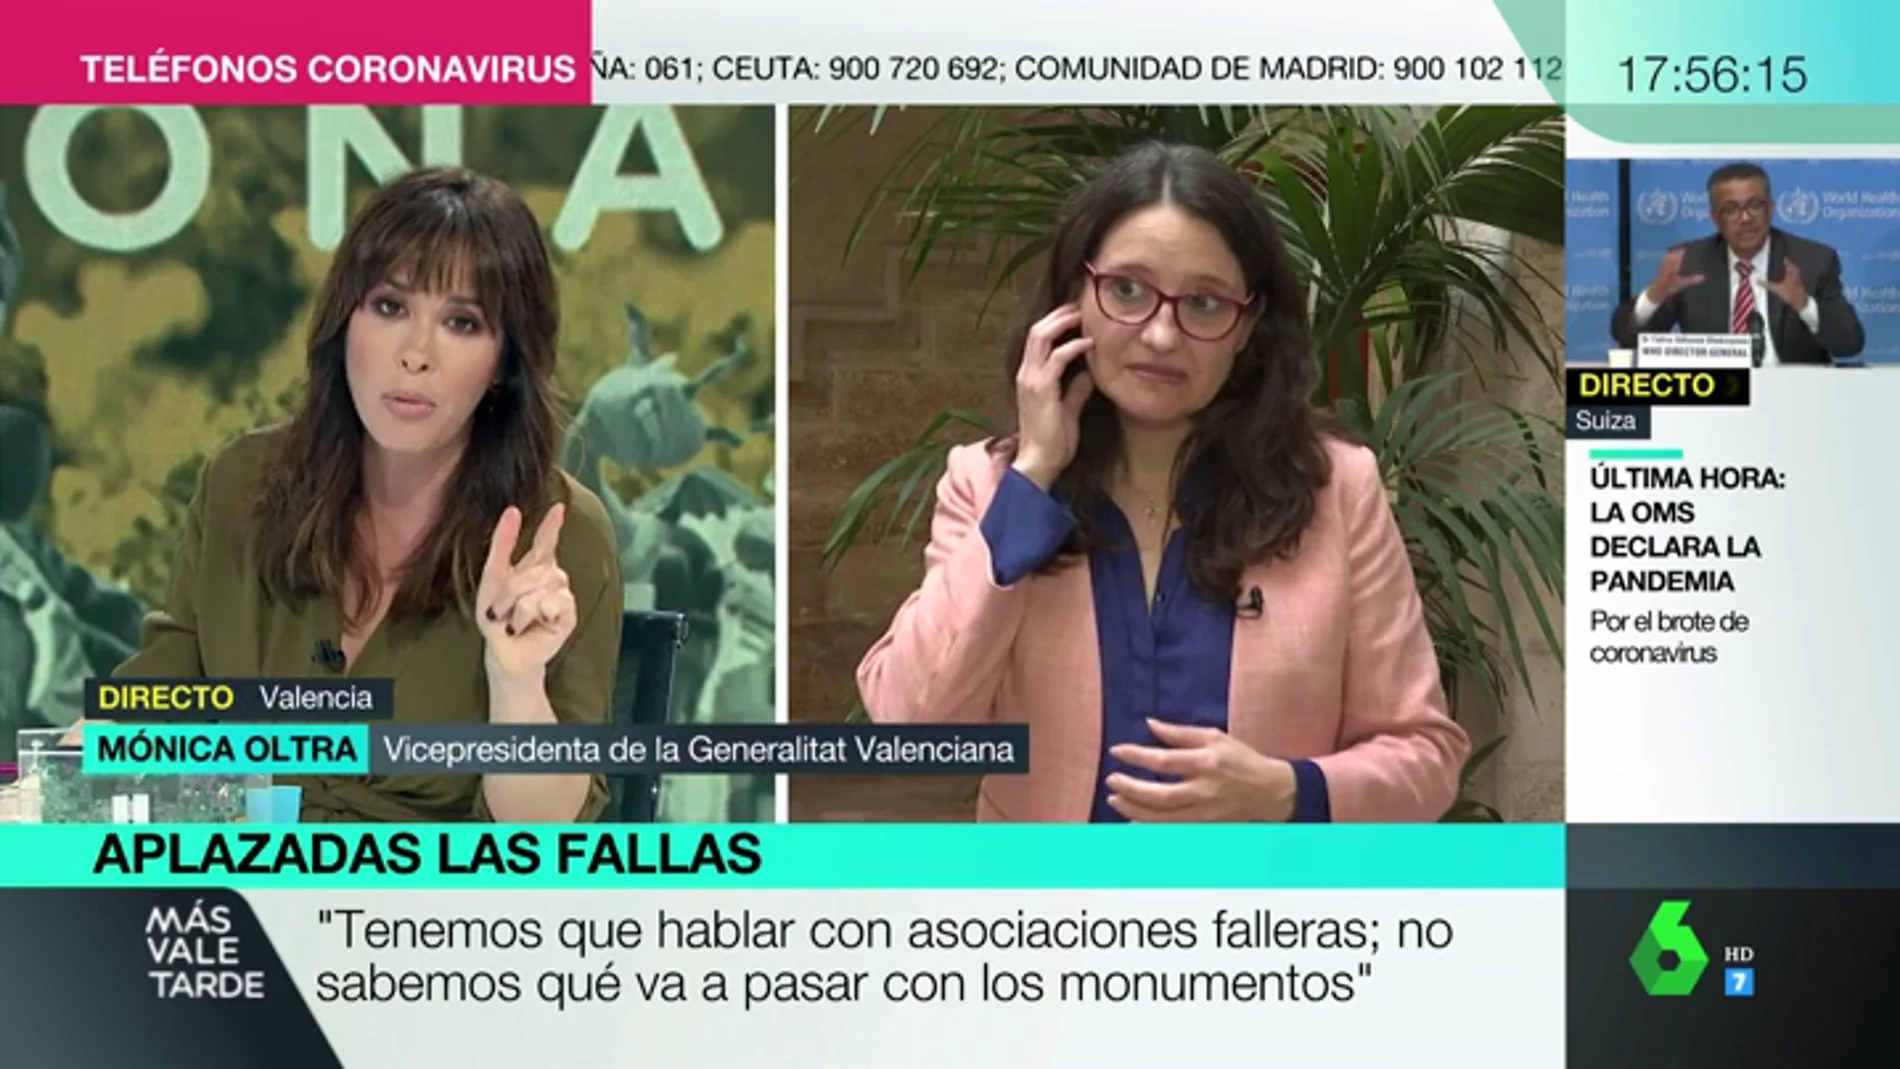 La reacción de Mónica Oltra tras conocer el positivo en coronavirus de una diputada de Vox en Valencia: "Lo siento muchísimo"